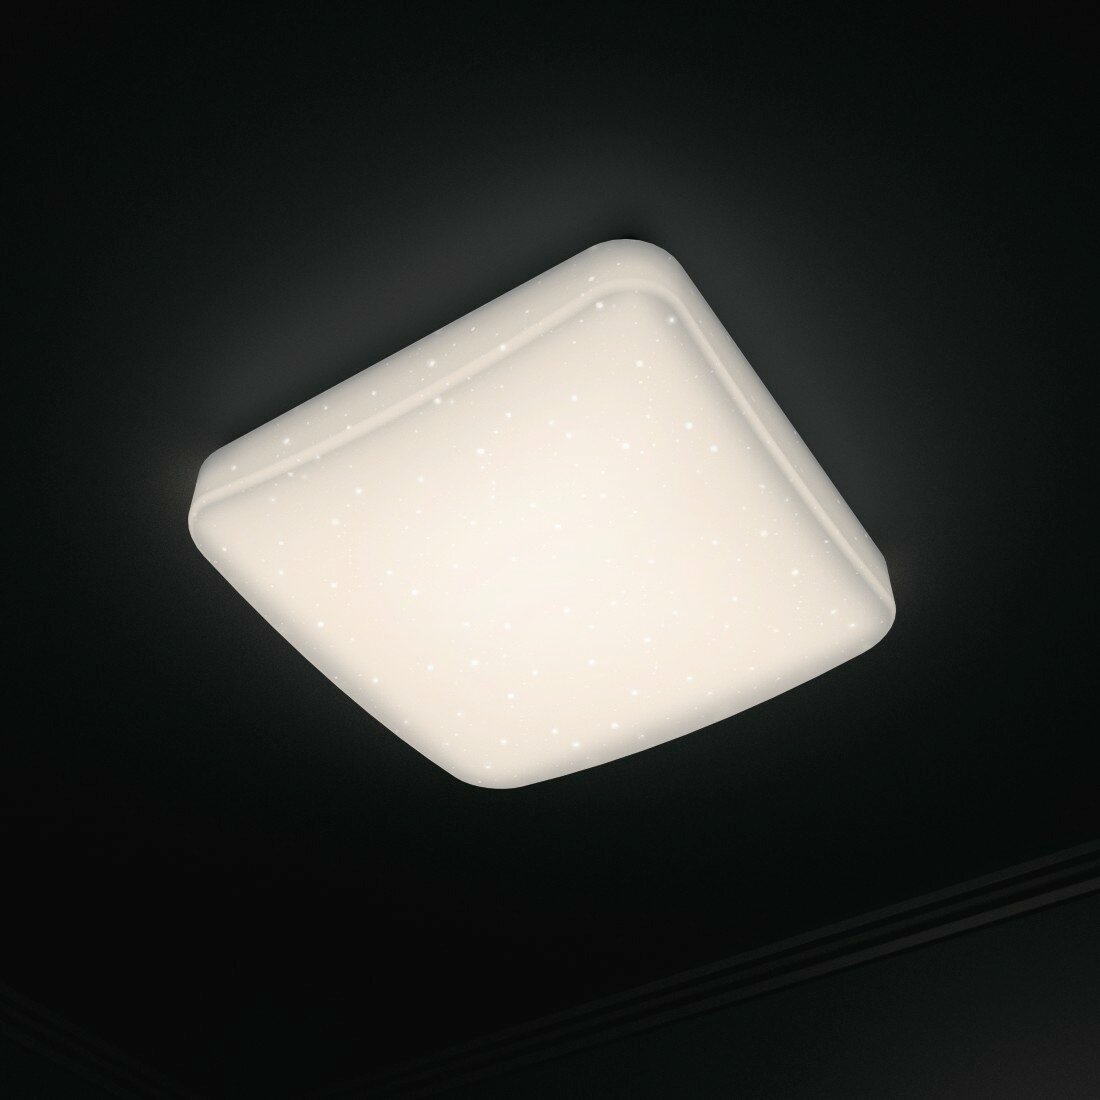 Lampa sufitowa sterowana Wi-Fi HAMA efekt brokatu, kwadratowa, 27 cm widok od dołu na lampę włączoną z efektem gwiazd